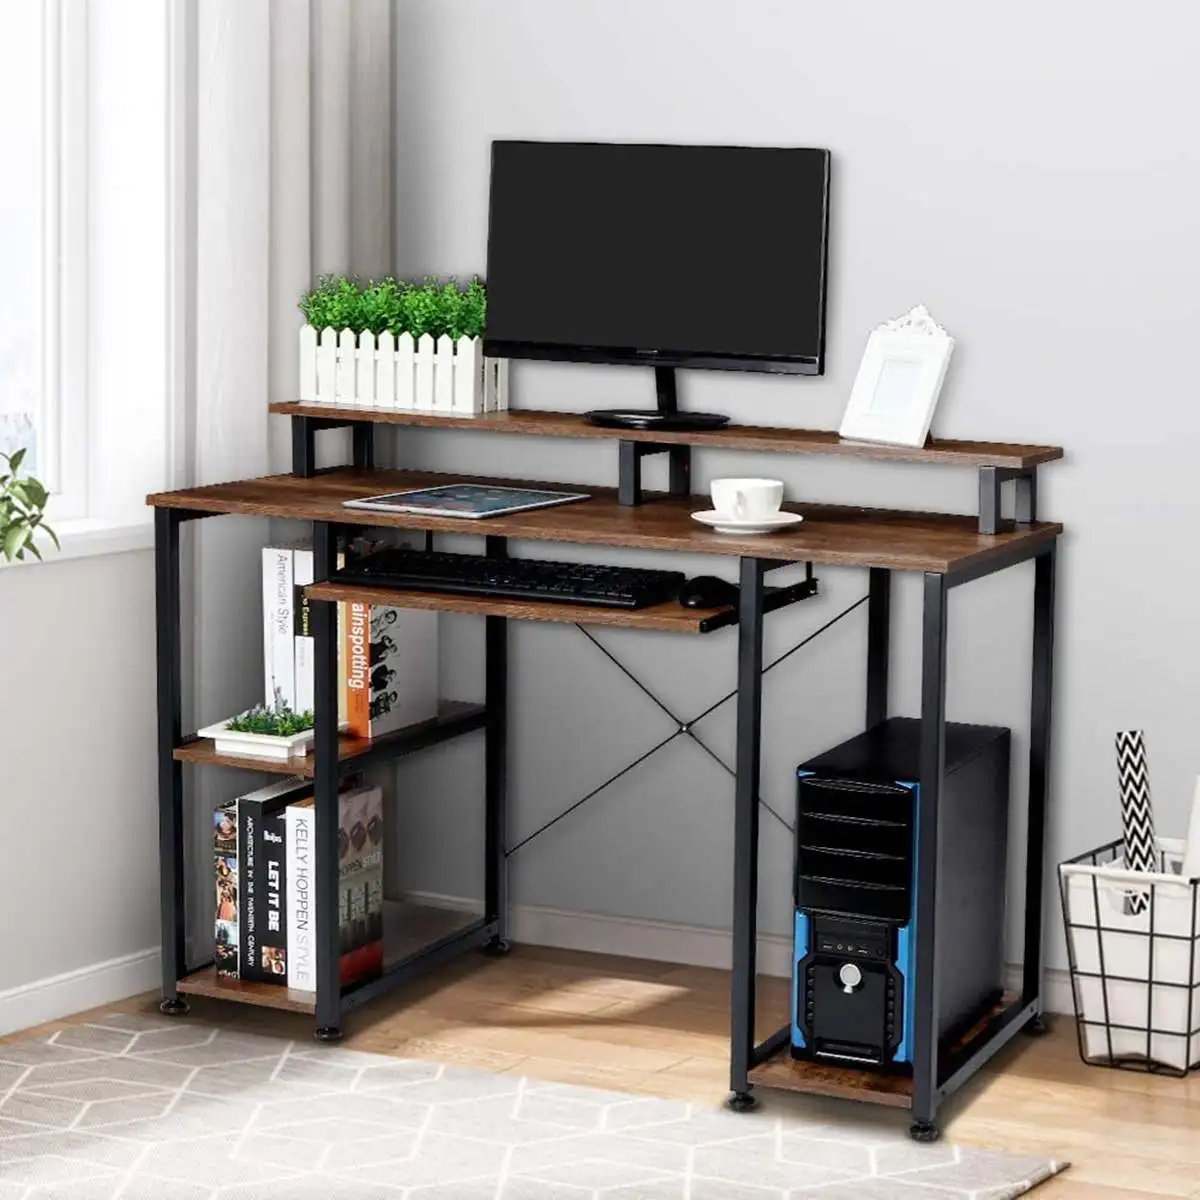 

Компьютерный стол 118 см с подставкой, игровой стол в стиле ретро, рабочее место для учебы, офисная мебель для дома и игр